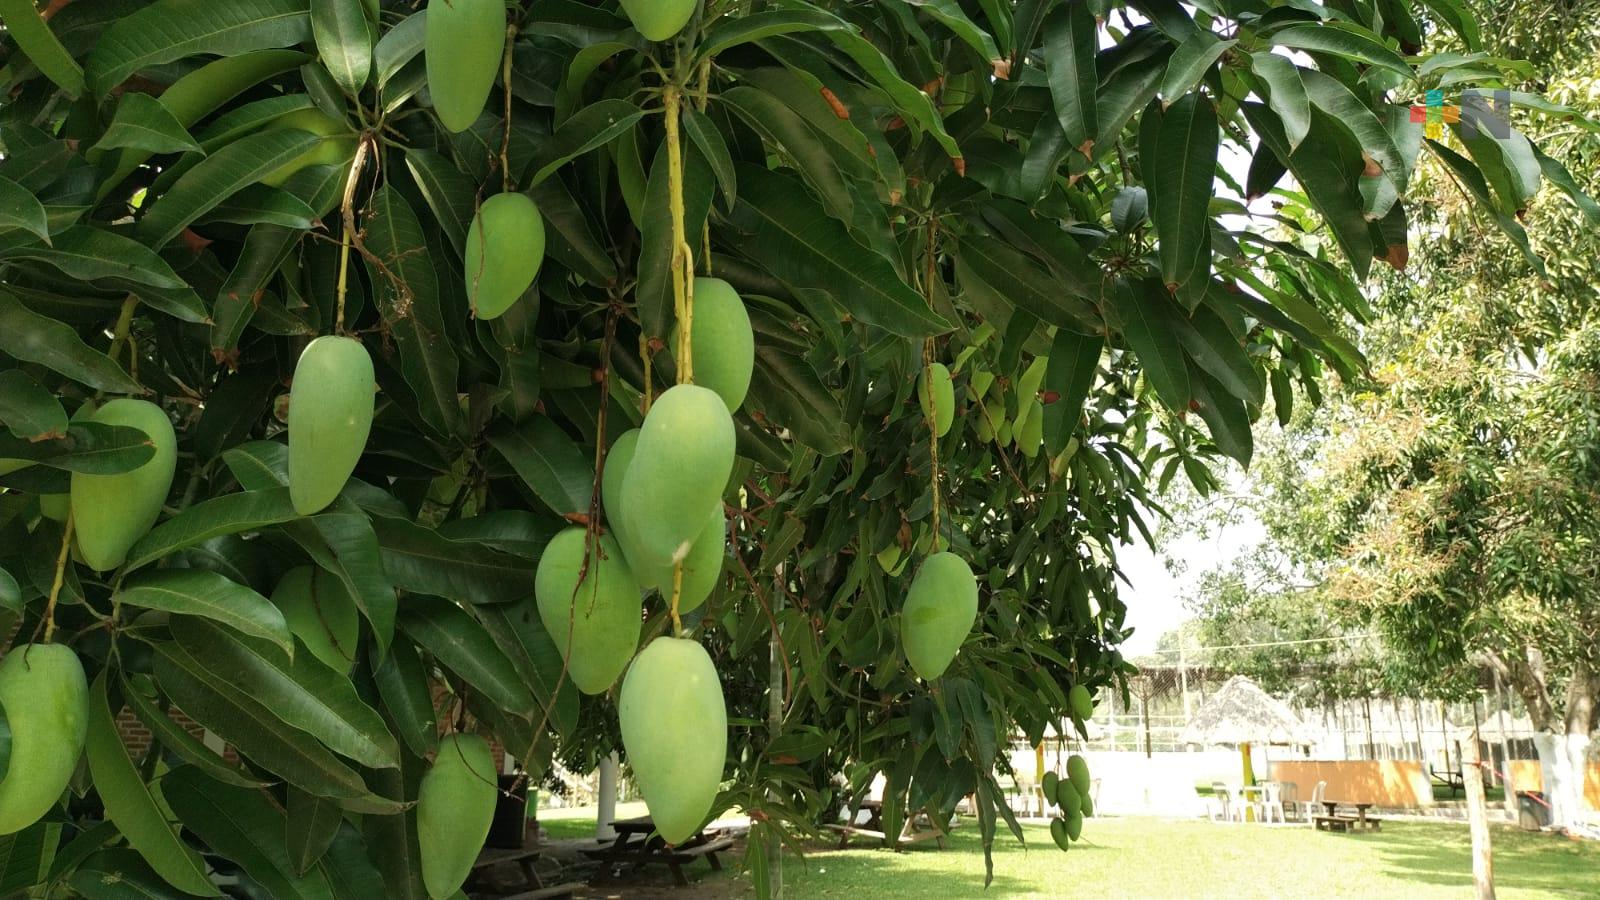 Prestadores de servicio y autoridades se declaran listos para recibir al turismo en la Feria del Mango